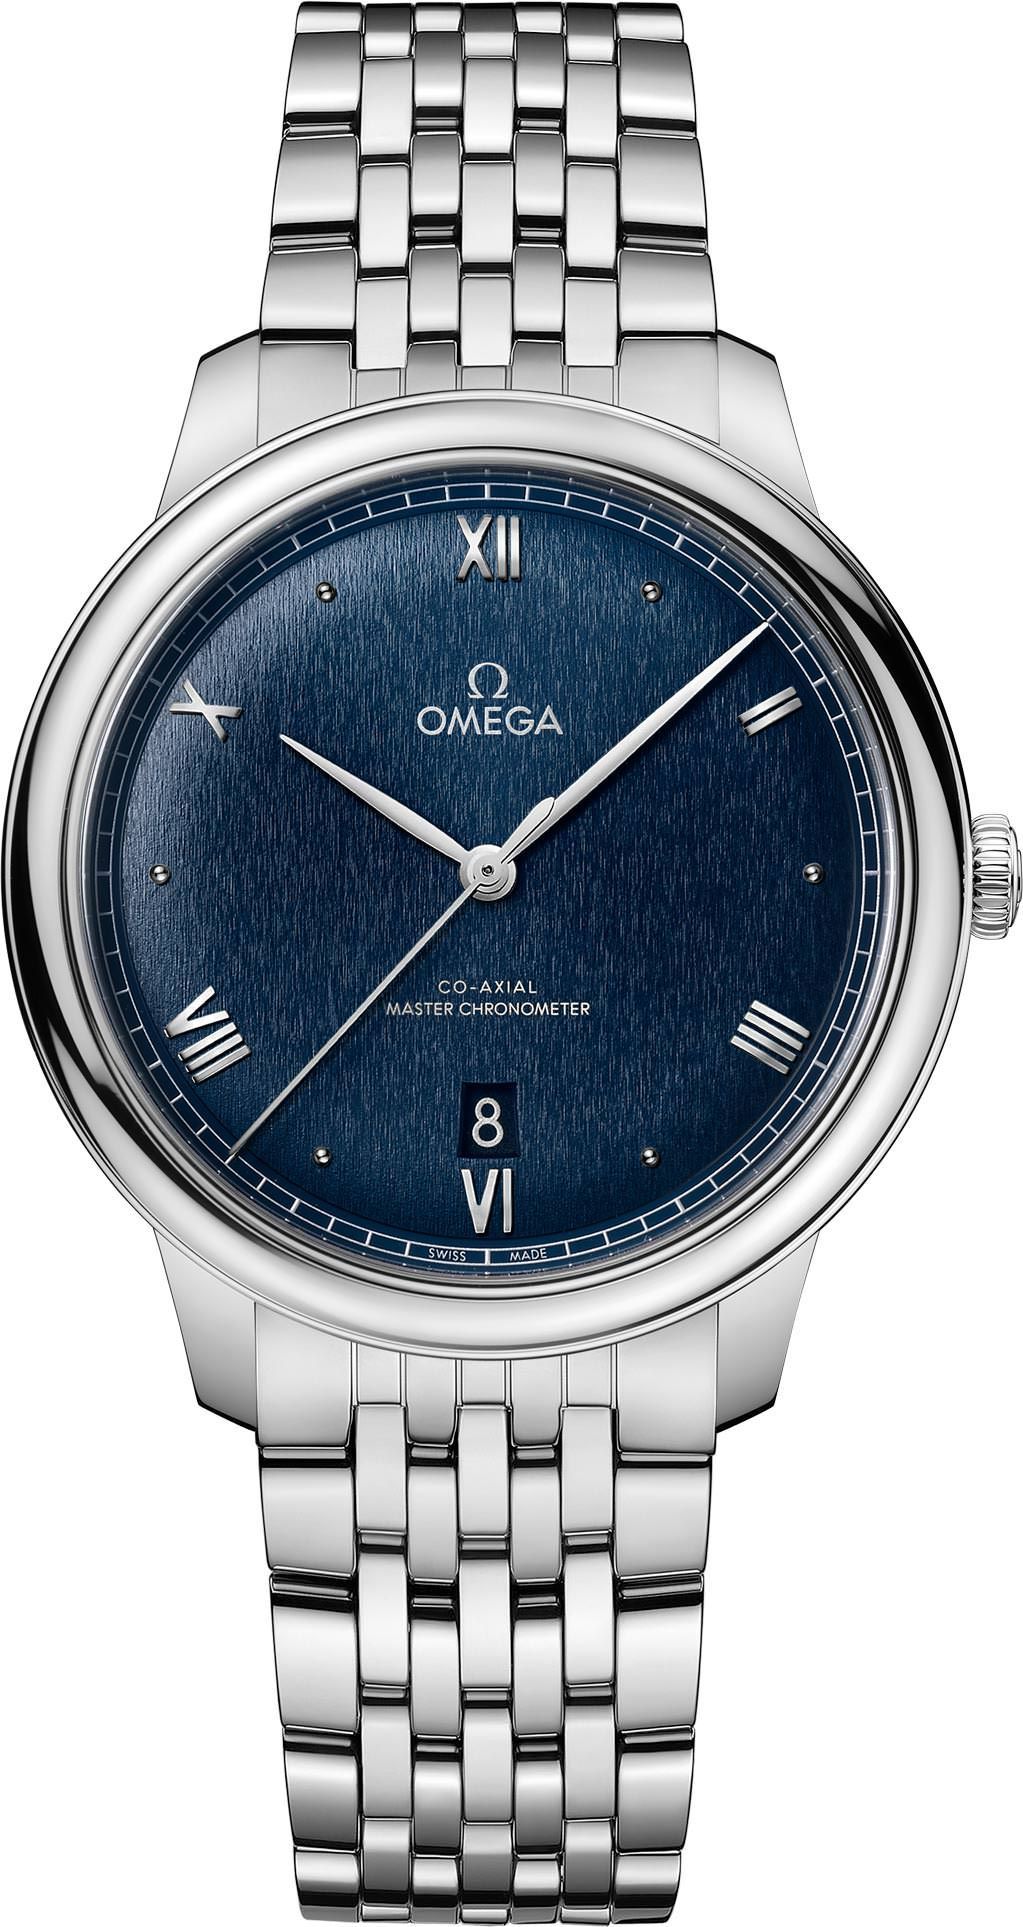 Omega De Ville Prestige Blue Dial 40 mm Automatic Watch For Men - 1